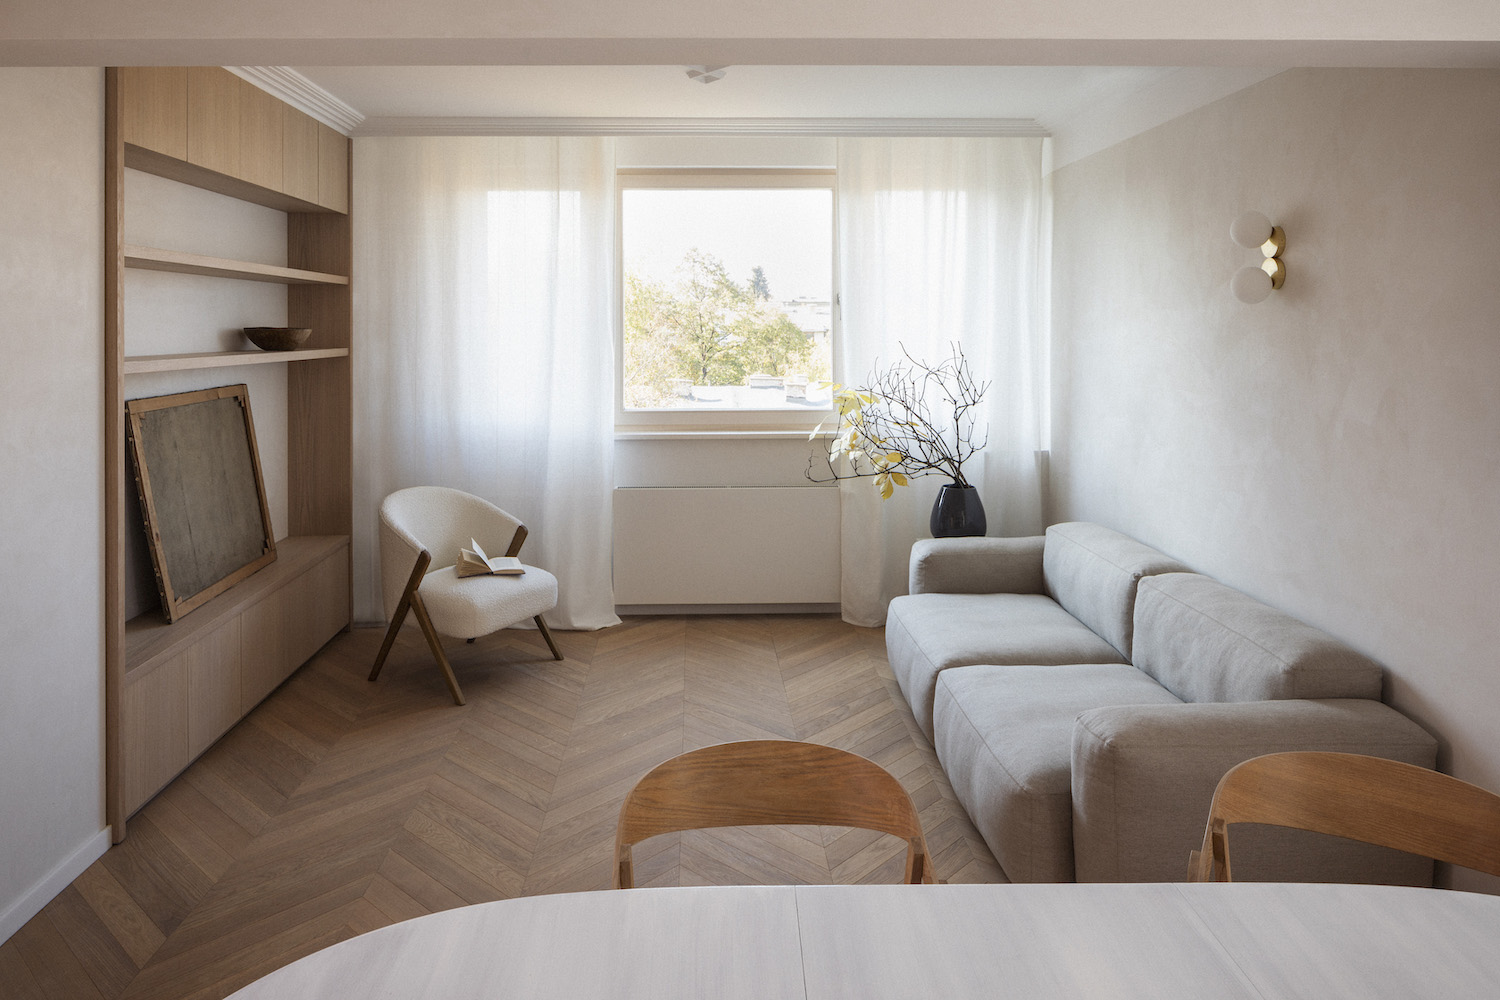 Atelier IA,保加利亚,公寓设计,家装设计,公寓设计案例,原木色,70㎡